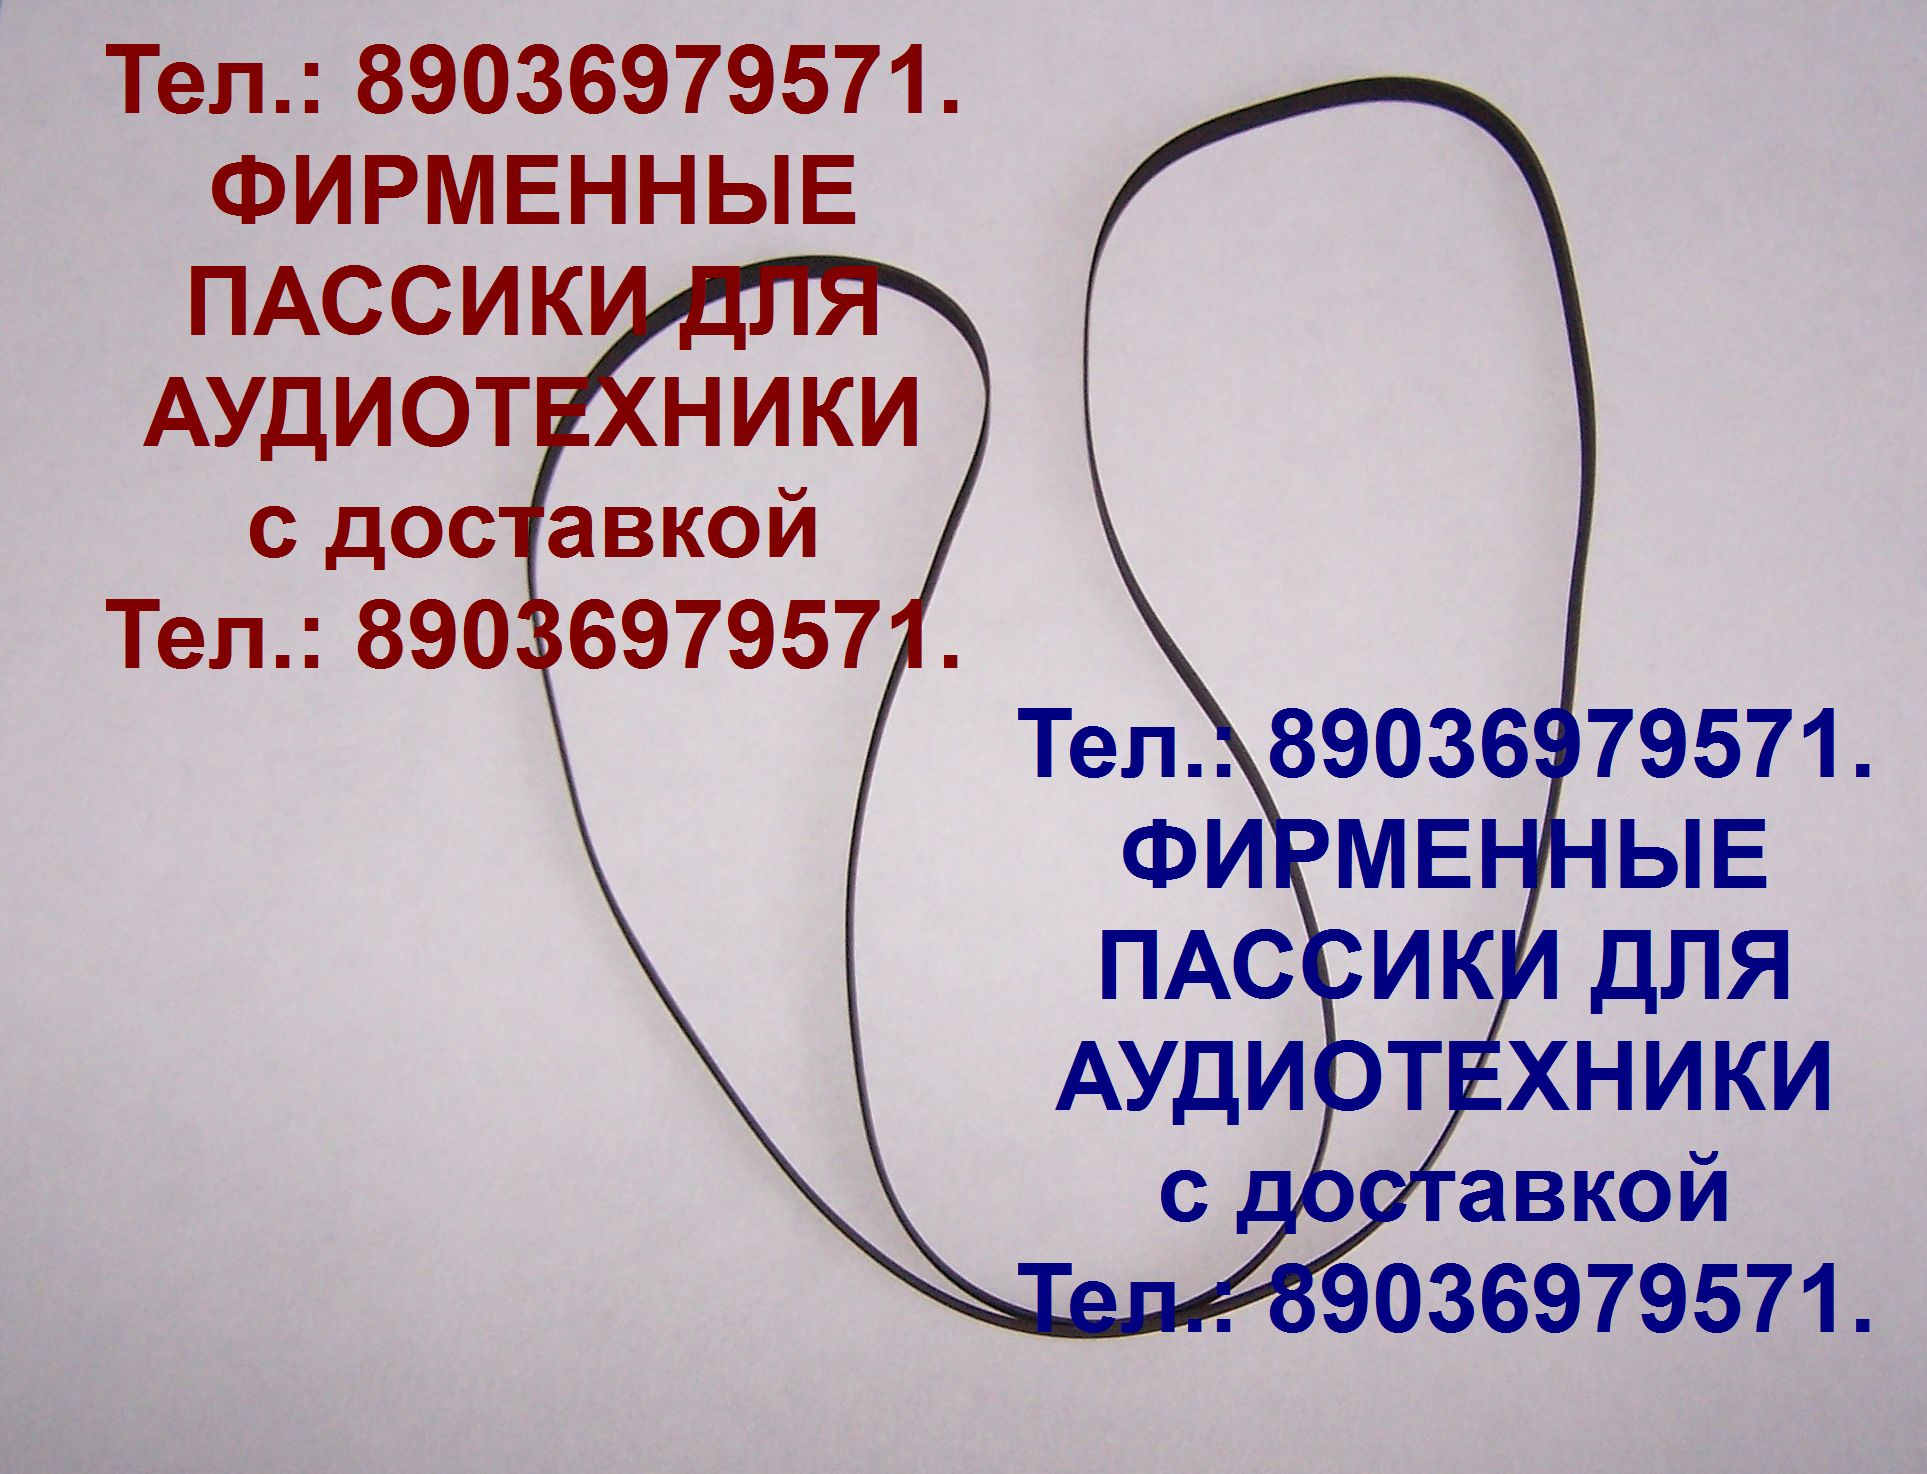 пассик для Akai AP-005 в городе Москва, фото 1, телефон продавца: +7 (903) 697-95-71